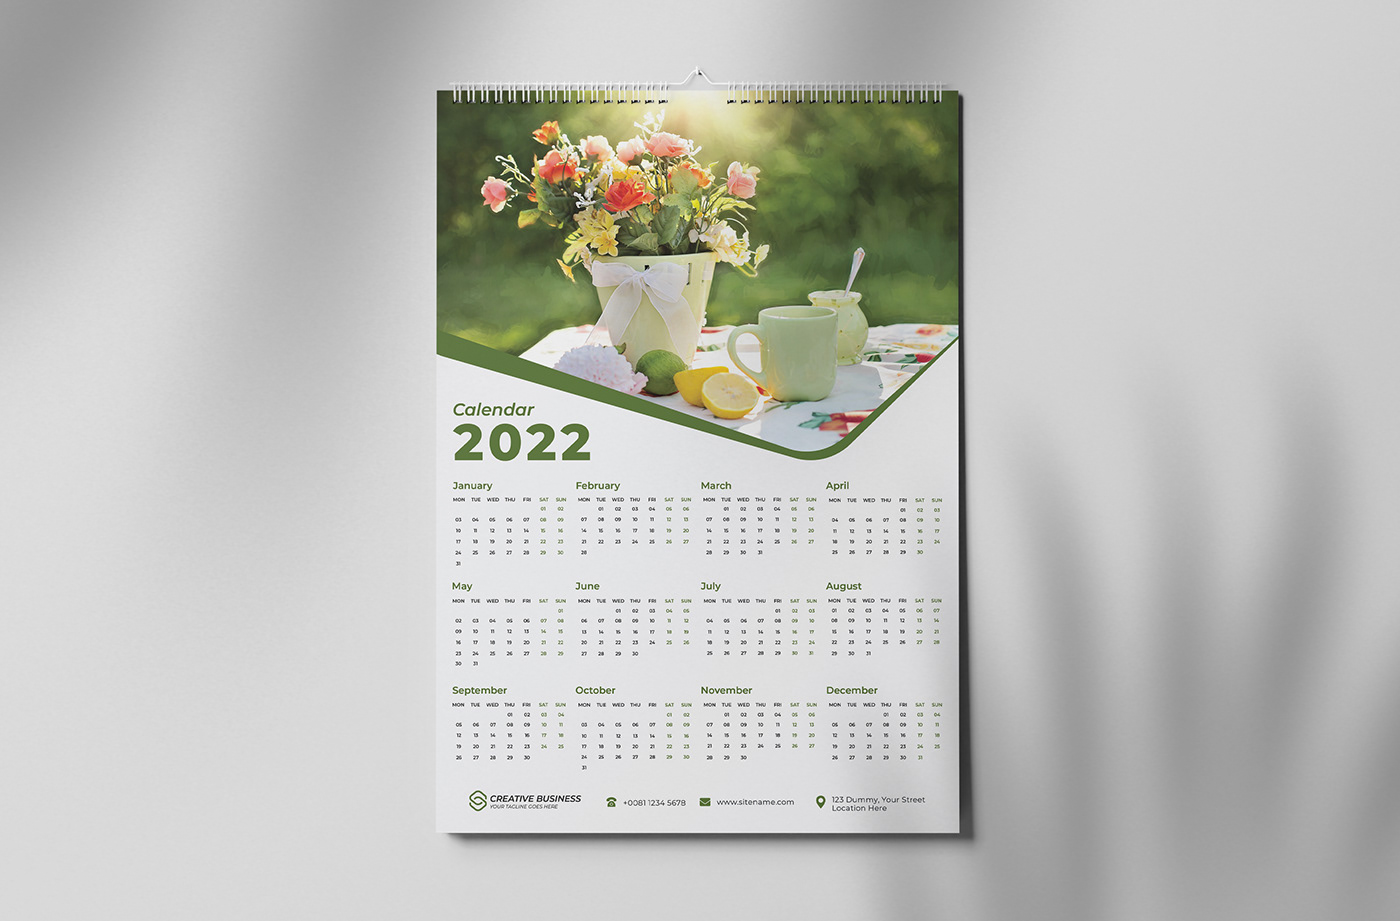 2022 Calendar calendar Calendar 2022 calendar design happy new year New Calendar wall calendar